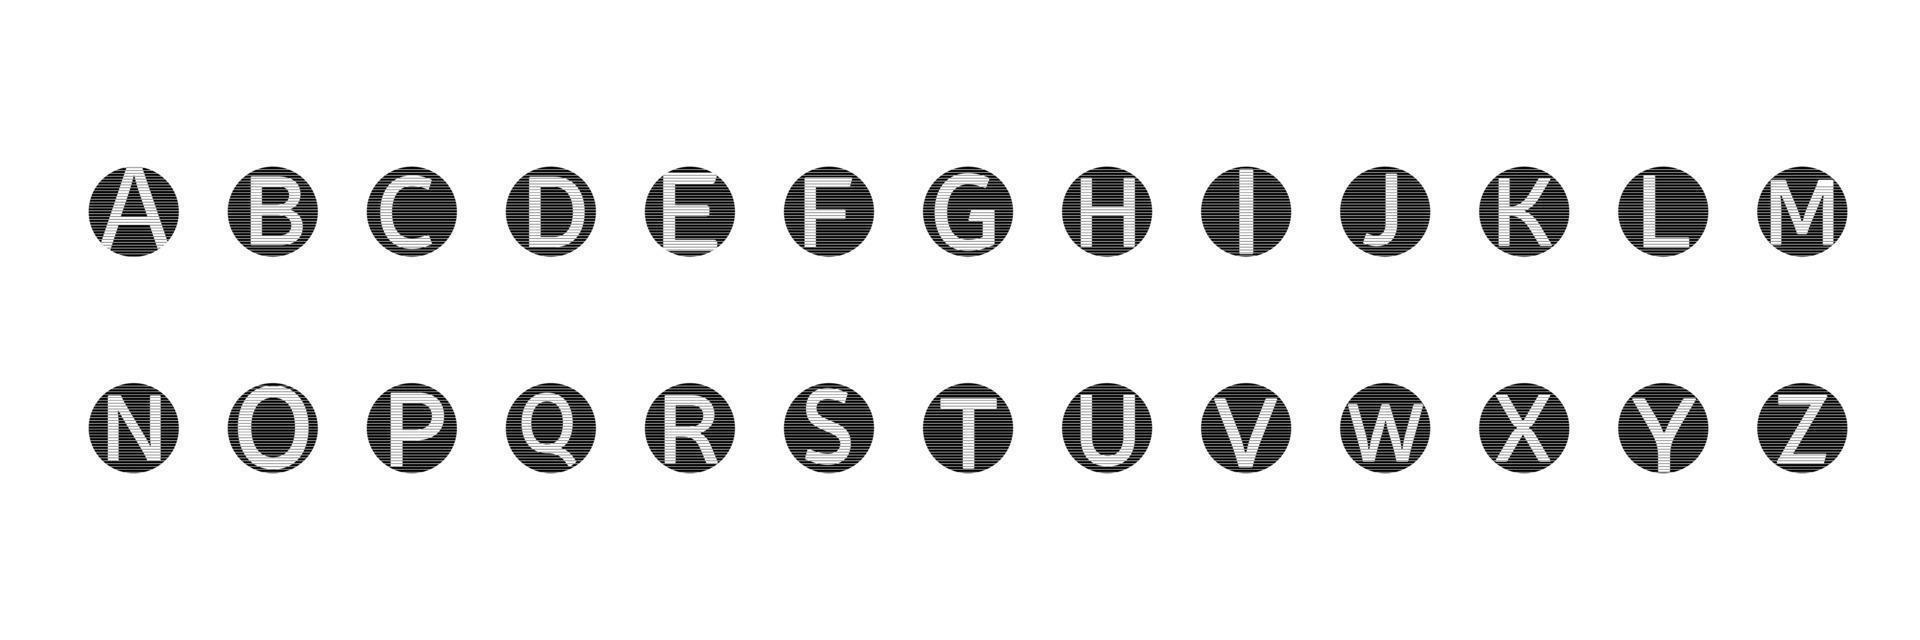 alfabeto inglese lettere simboli icone segni semplice set colorato in bianco e nero. un insieme di icone di lettere dell'alfabeto inglese, piatte, bianche e nere per lo più nere. vettore